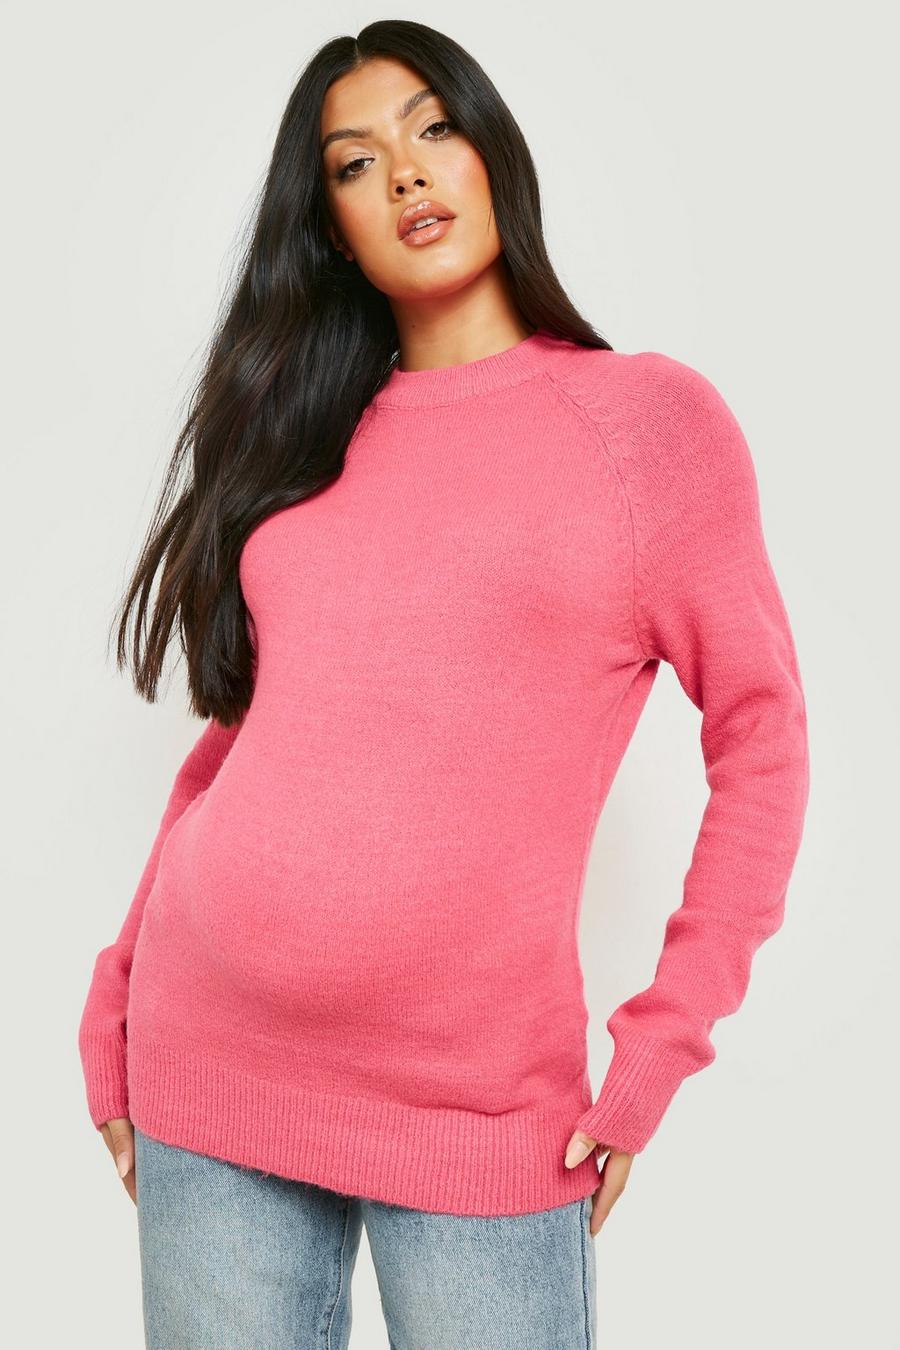 Hot pink Maternity Super Soft Crew Neck Jumper